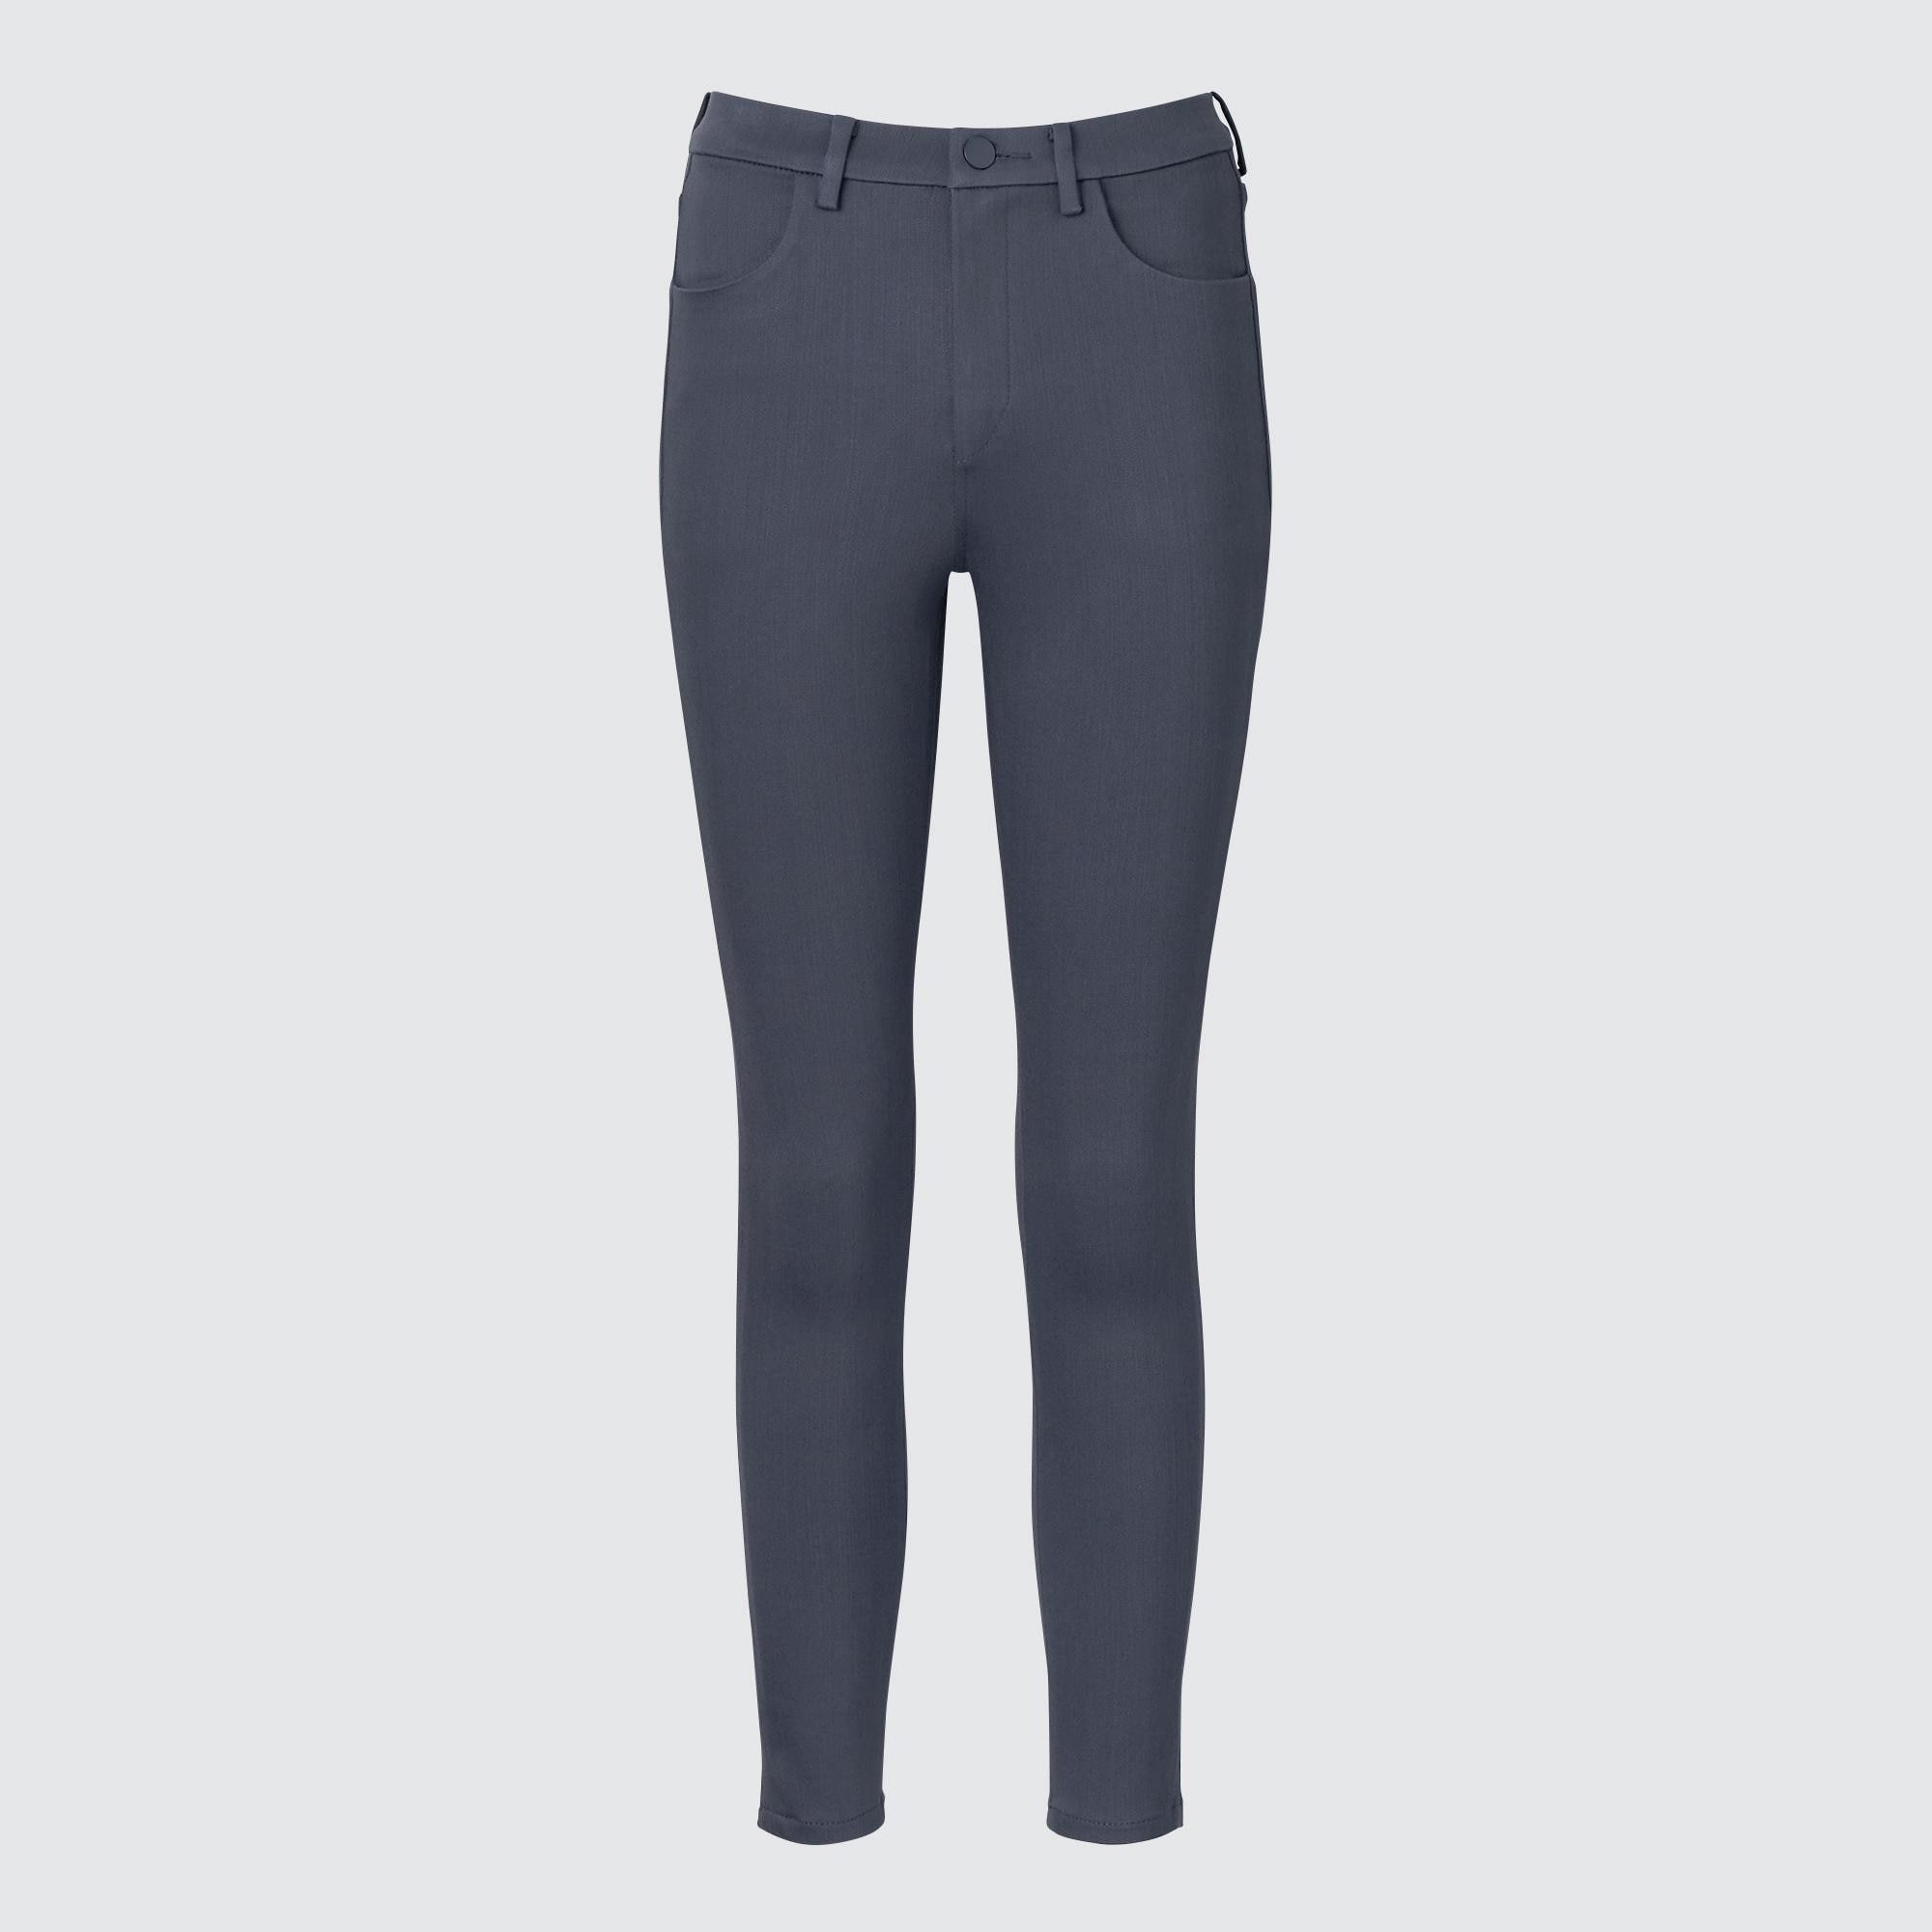 Джинсы Uniqlo женские скинни, серый джинсы скинни uniqlo размер 40 серый